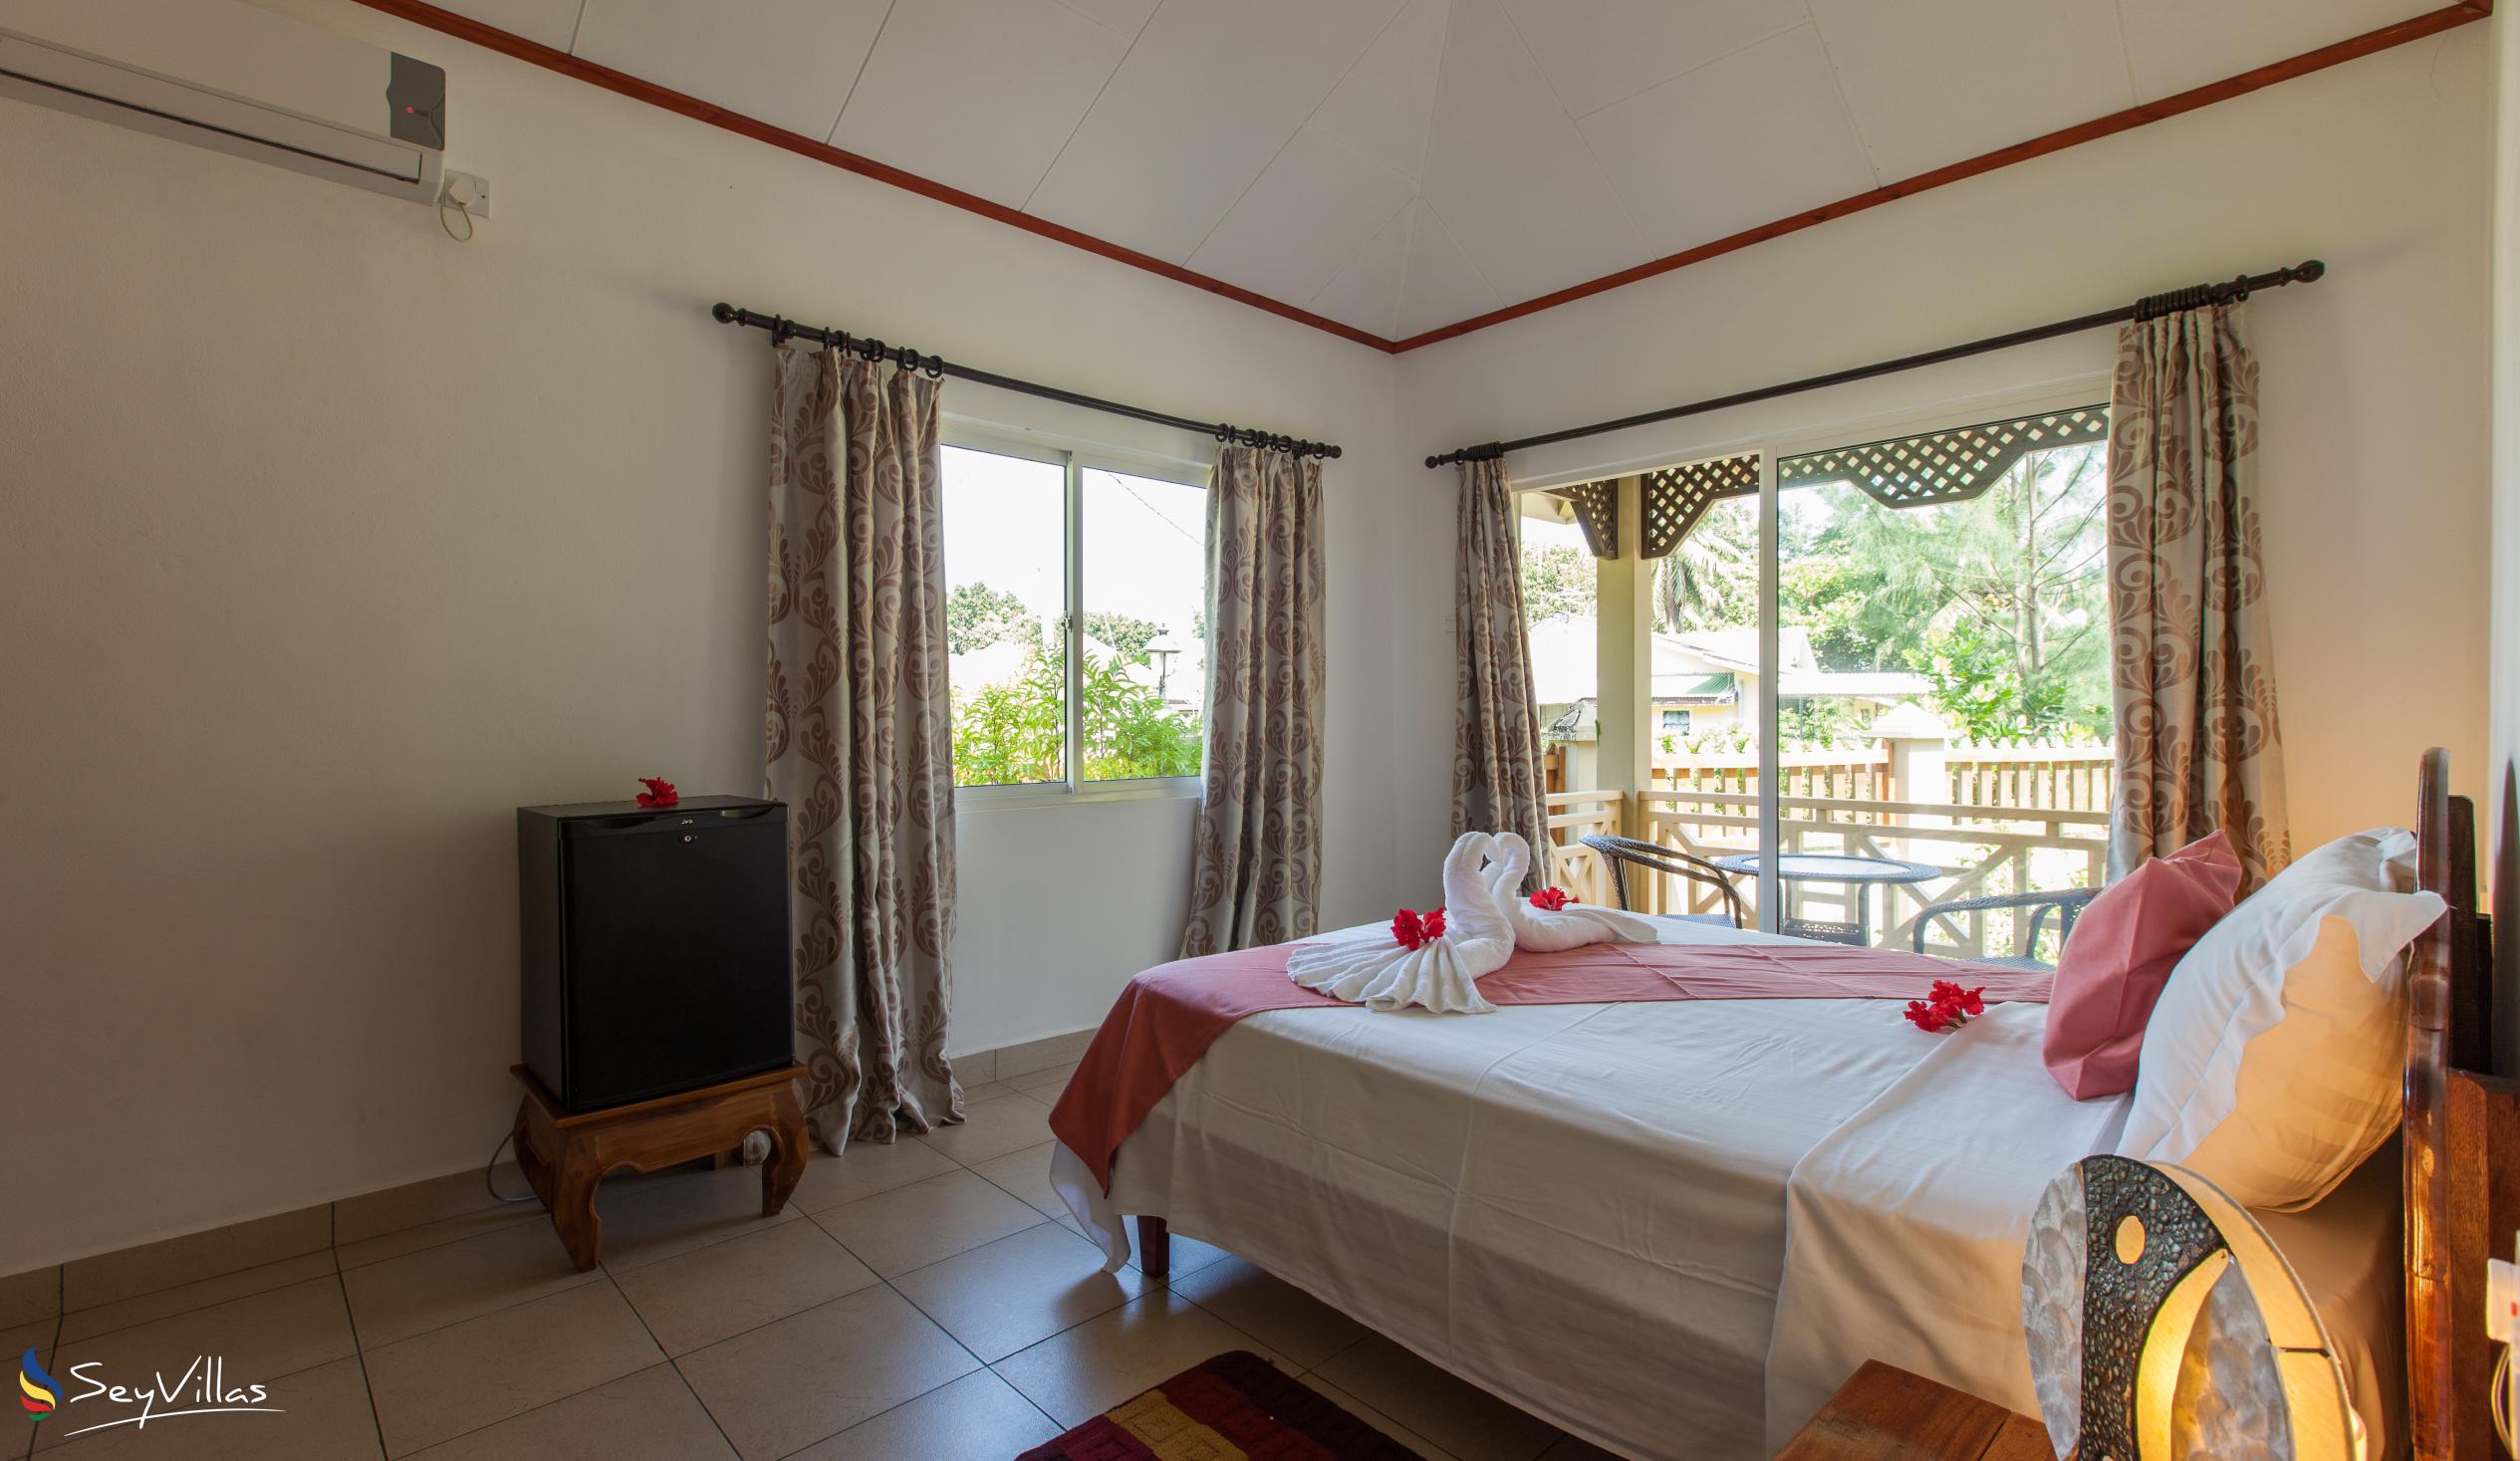 Foto 57: Hostellerie La Digue - Chalet 2 chambres - La Digue (Seychelles)